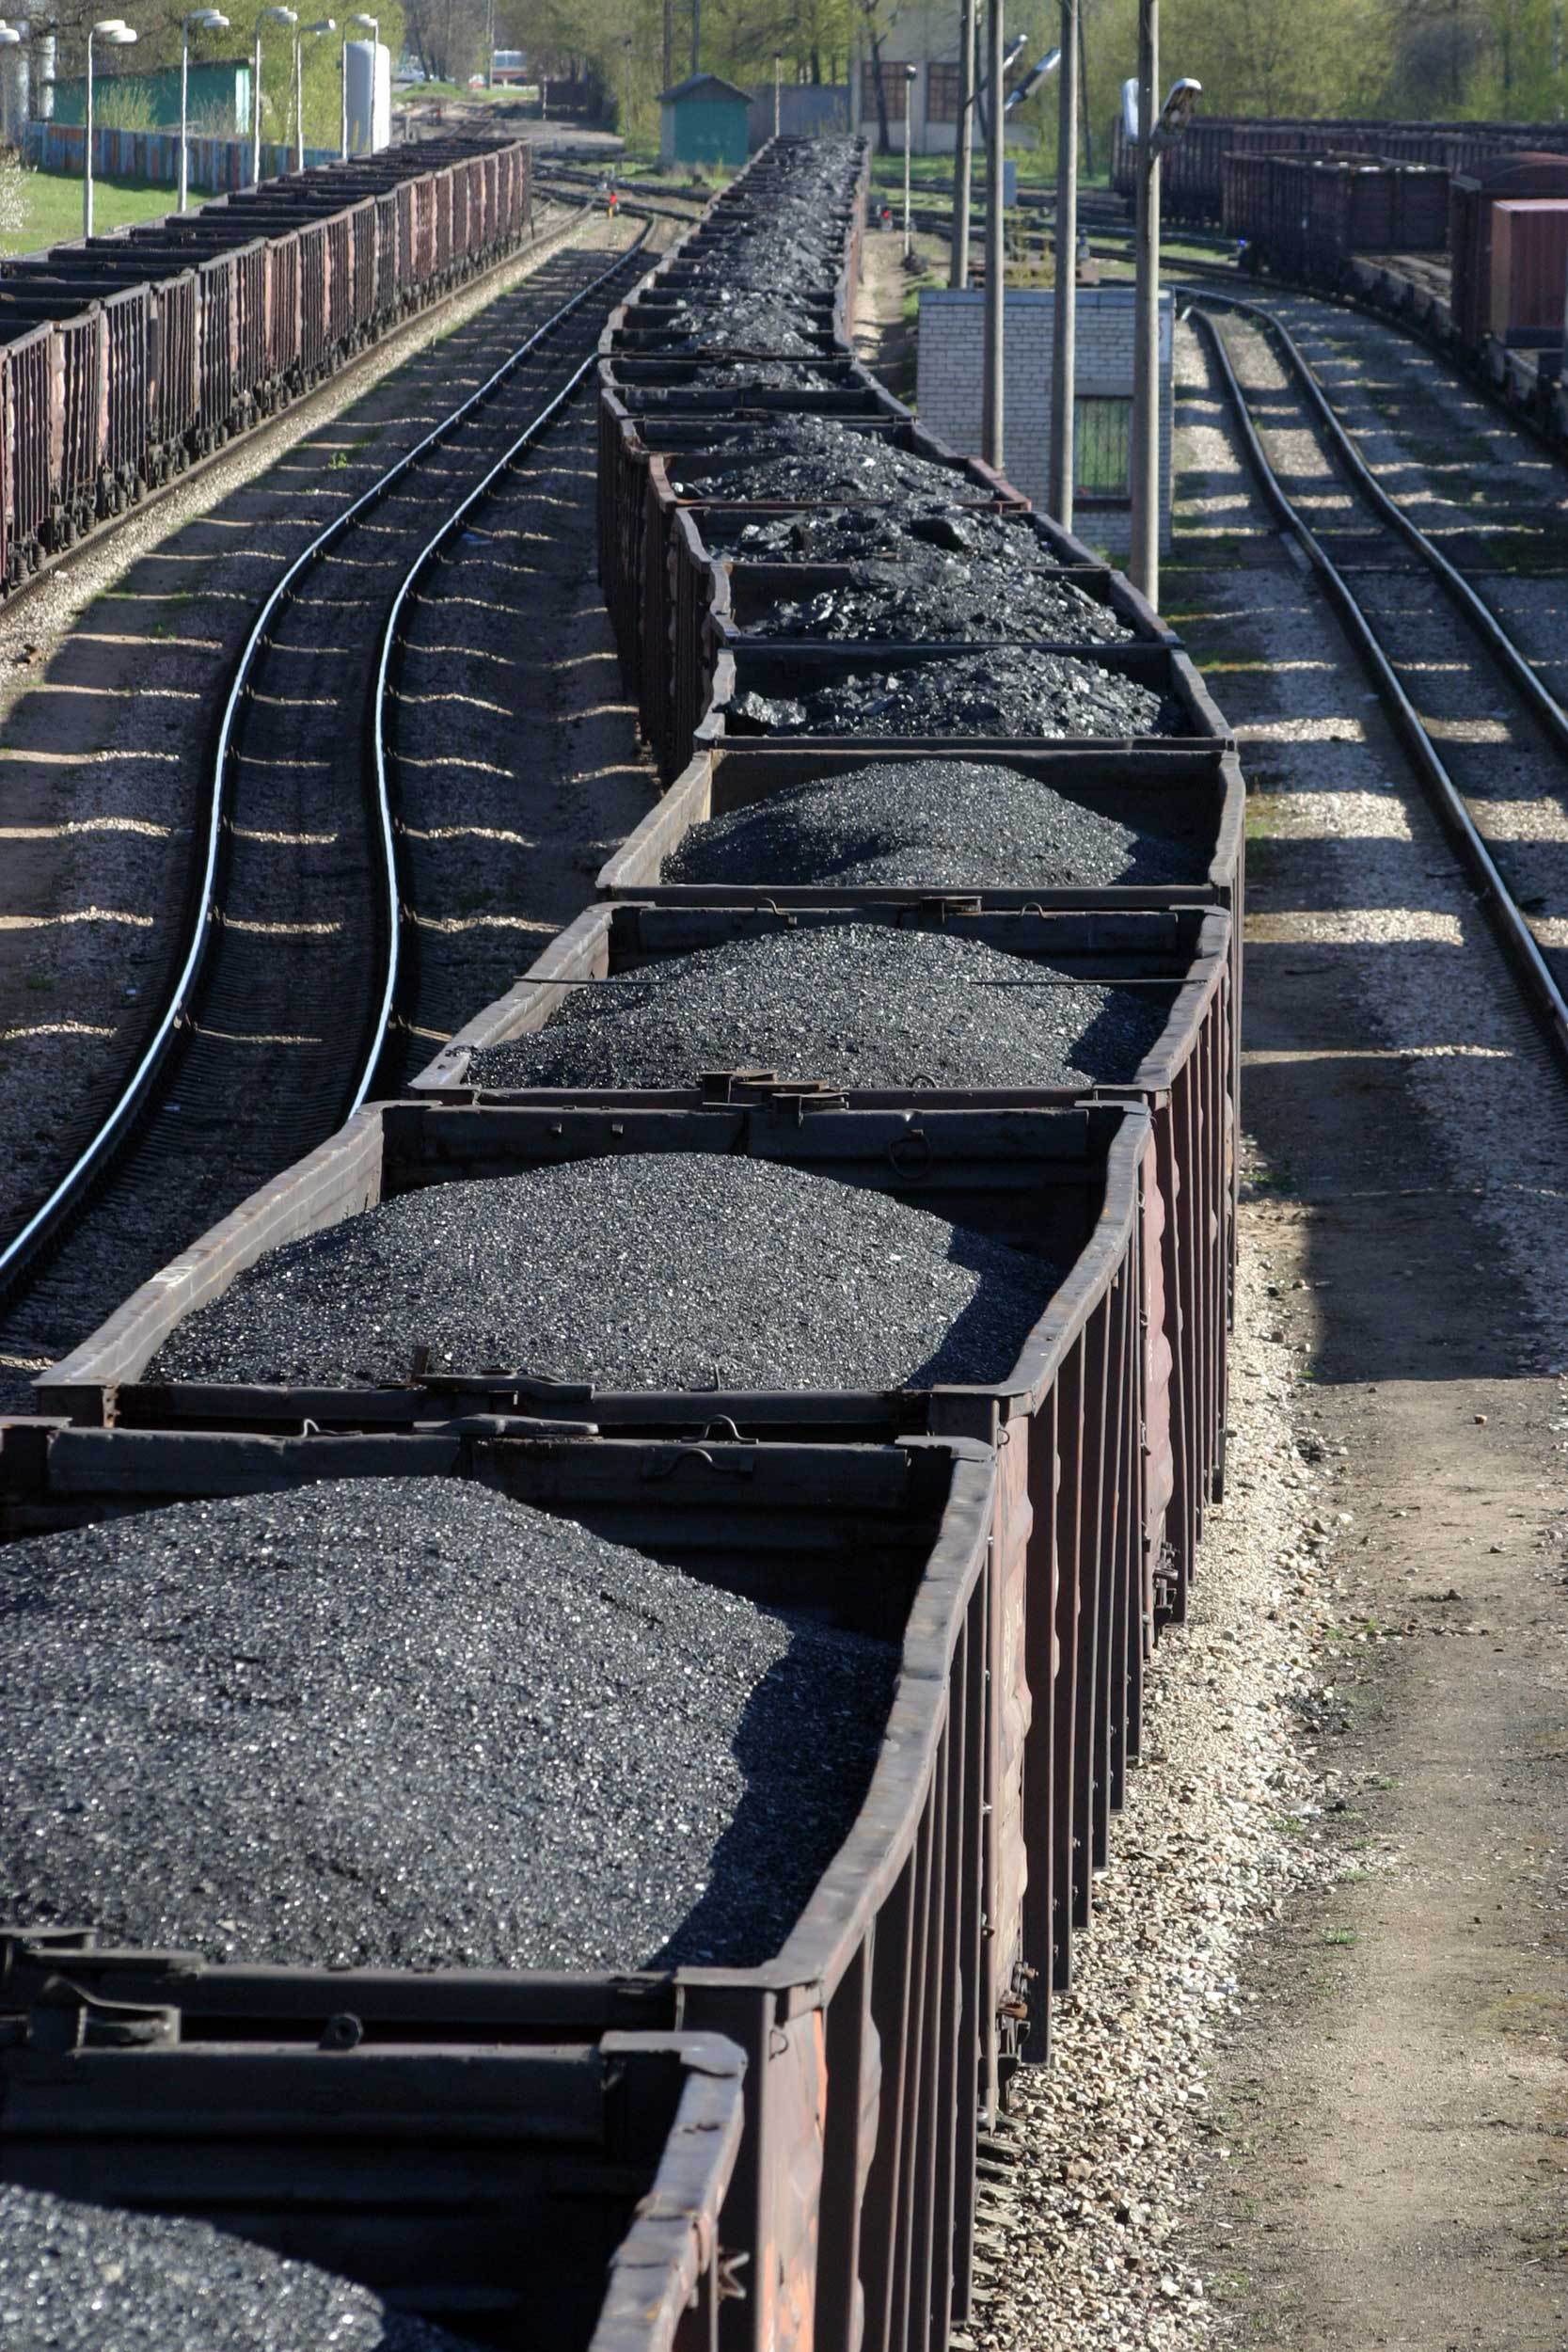 SUA: Cheltuieli de lobby de 94 mil. $ făcute de firme din industria cărbunelui înainte de faliment